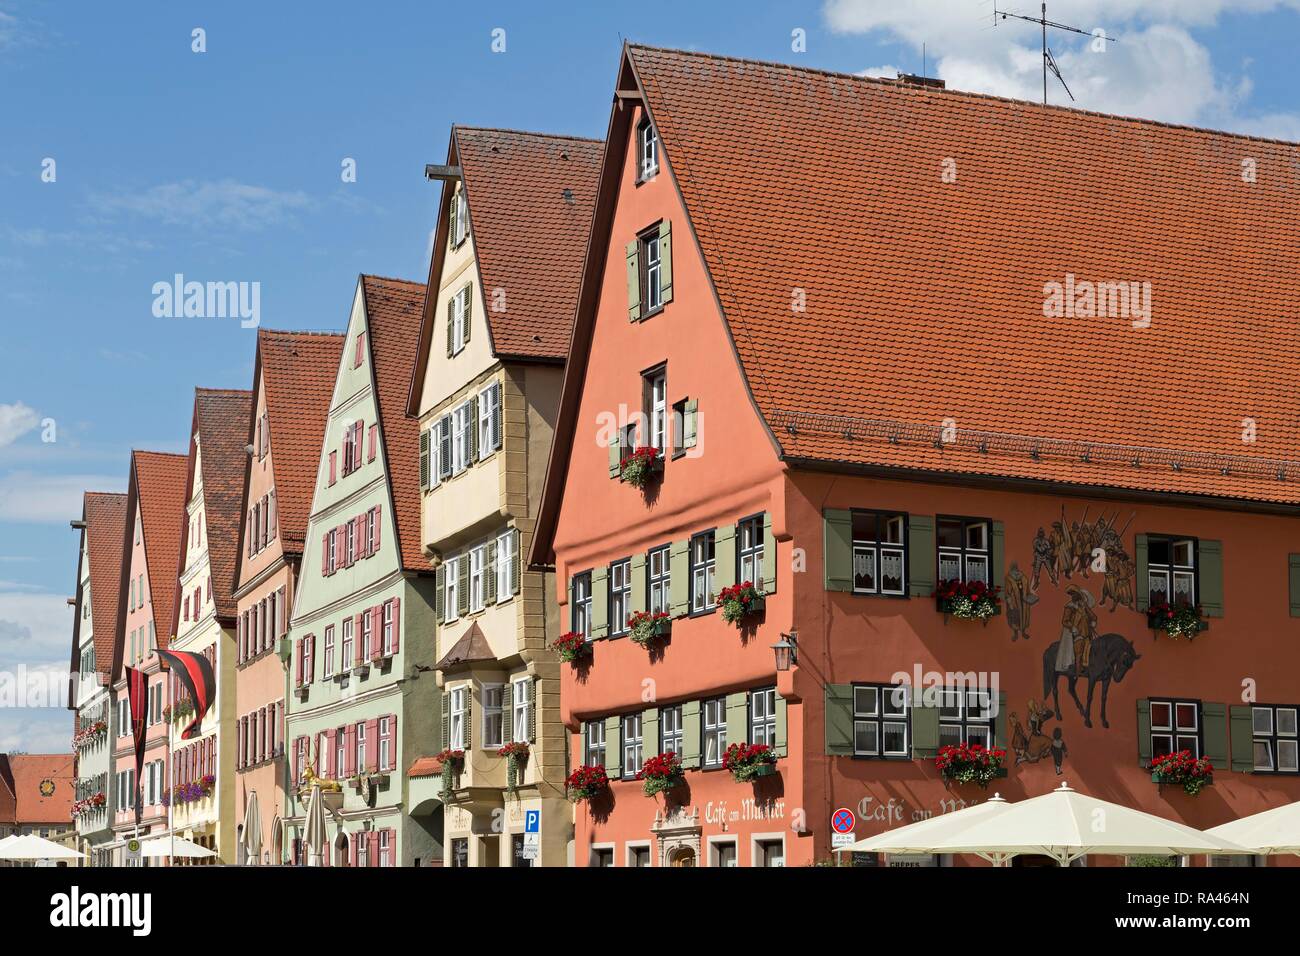 Maisons à pignons, Segringer Strasse, Dinkelsbühl, Middle Franconia, Bavaria, Germany Banque D'Images